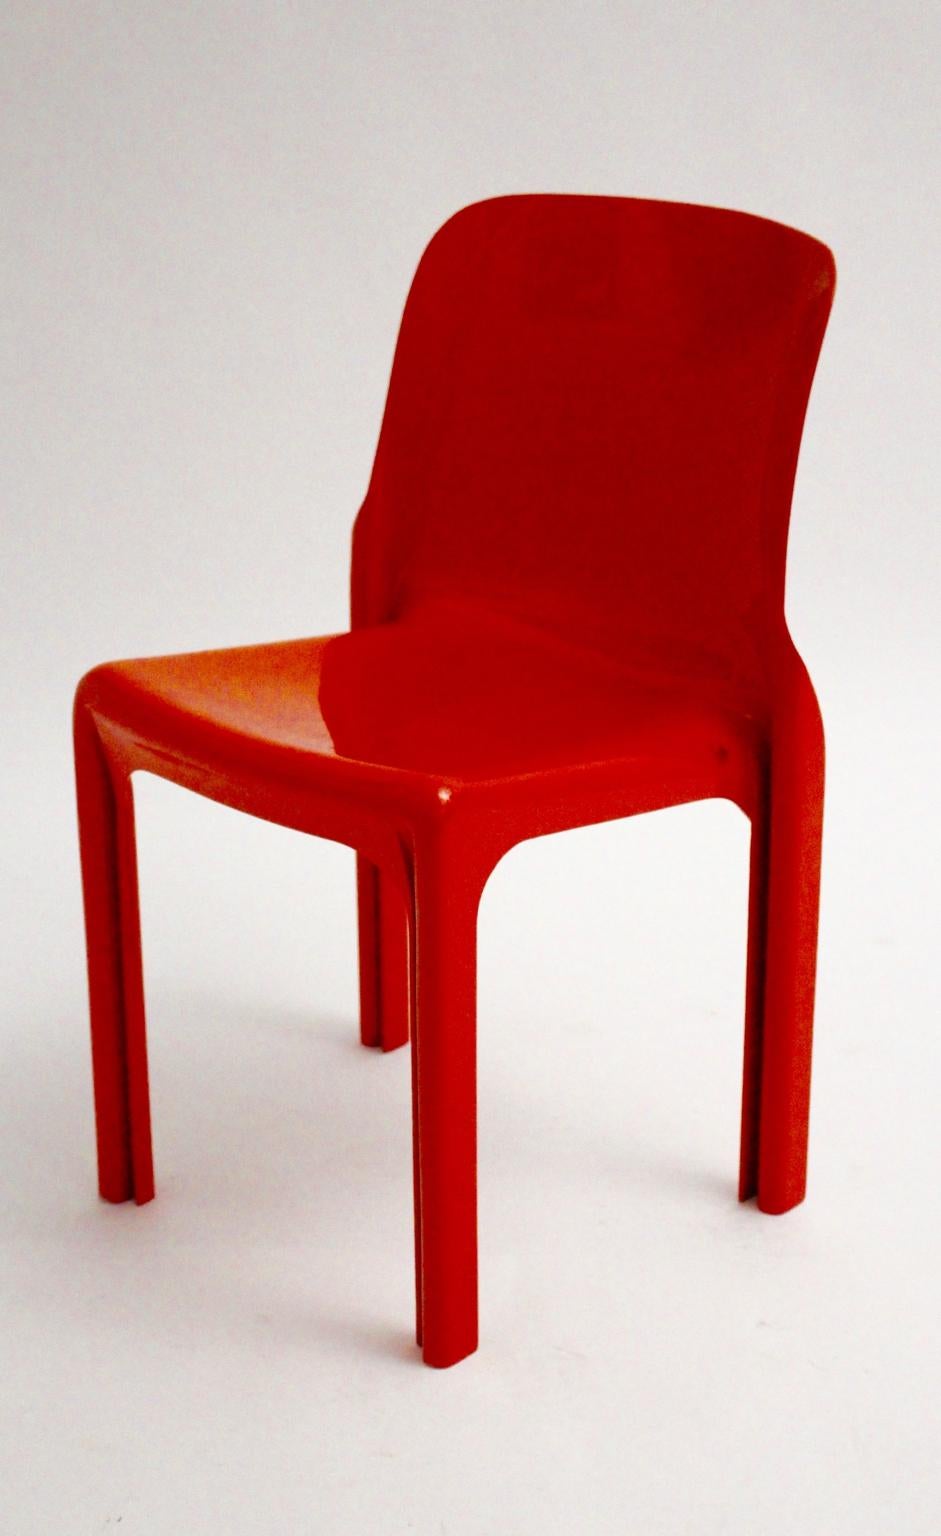 Chaise en plastique vintage rouge de l'ère spatiale, modèle Selene, conçue par Vico Magistretti en 1968 pour Artemide Milano, Italie.
La chaise présente un très bon état vintage avec de fines rayures sur la surface brillante.
La chaise est également